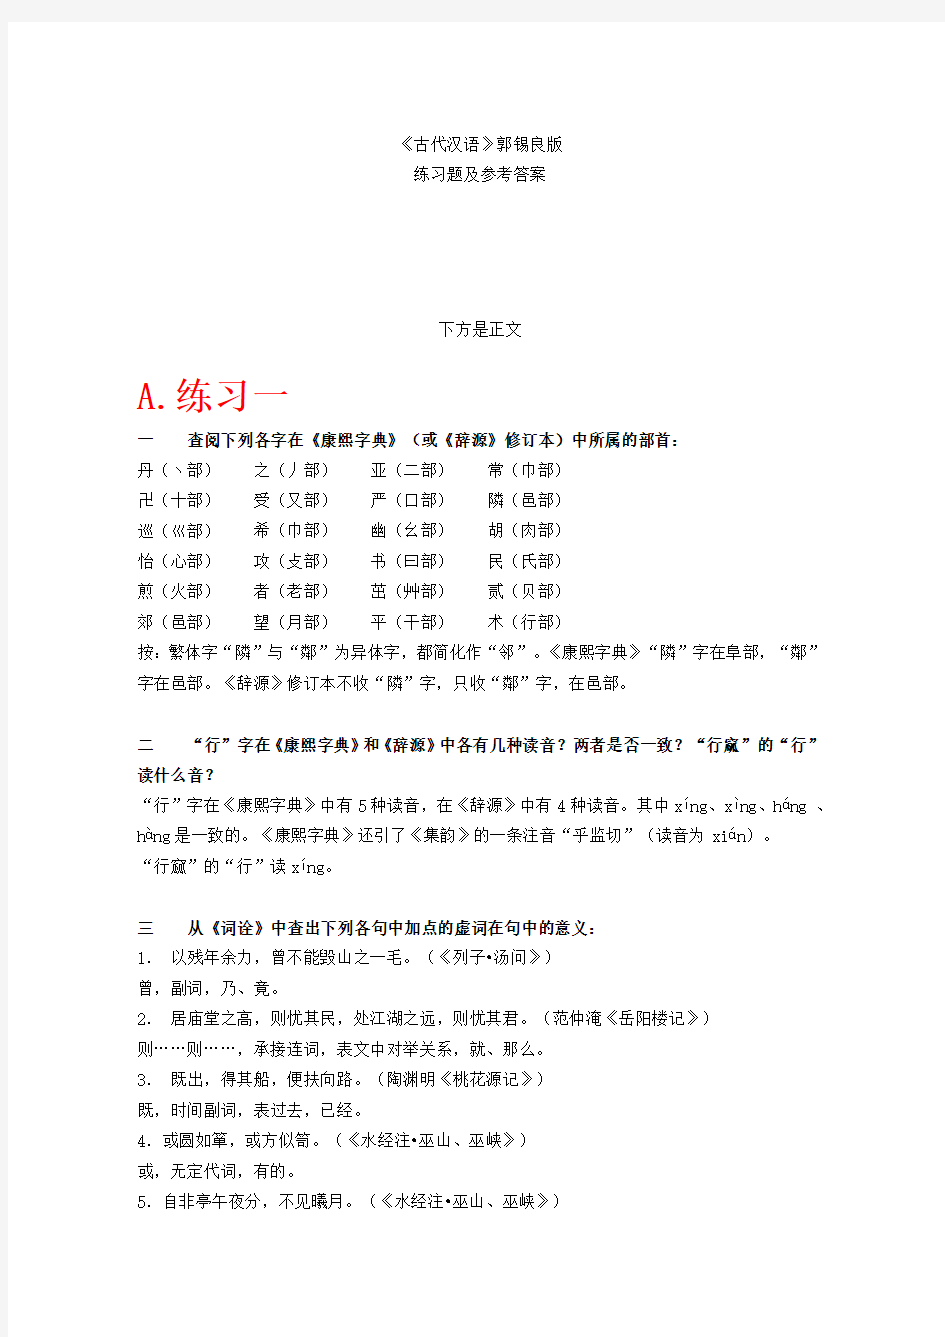 最新整理《古代汉语》上下册课后习题答案(全网最全-精心整理)资料